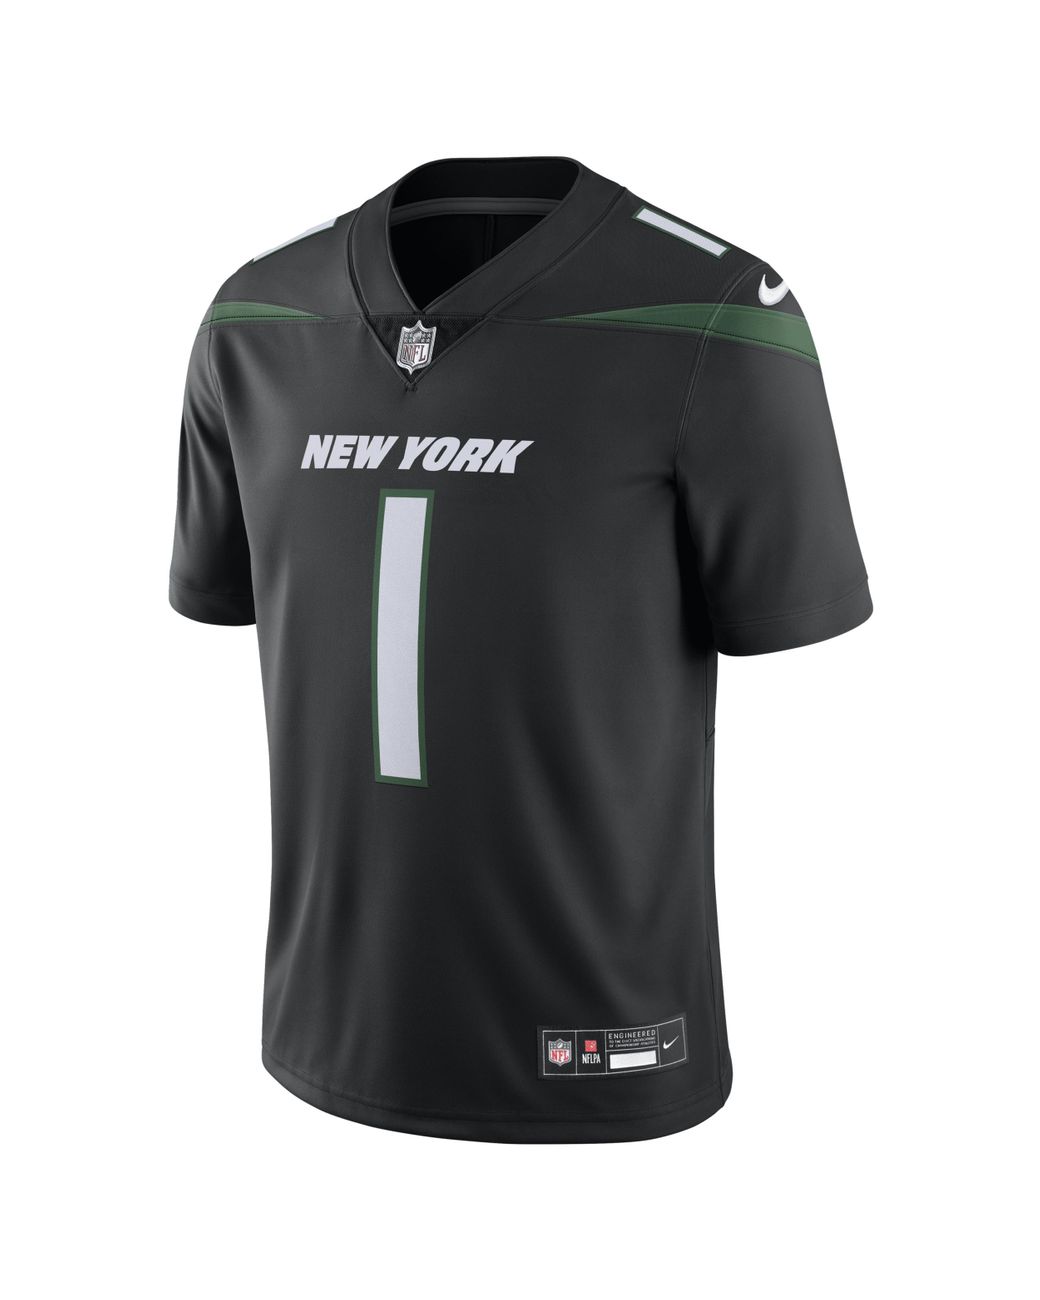 Nike Ahmad 'sauce' Gardner New York Jets Dri-fit Nfl Limited